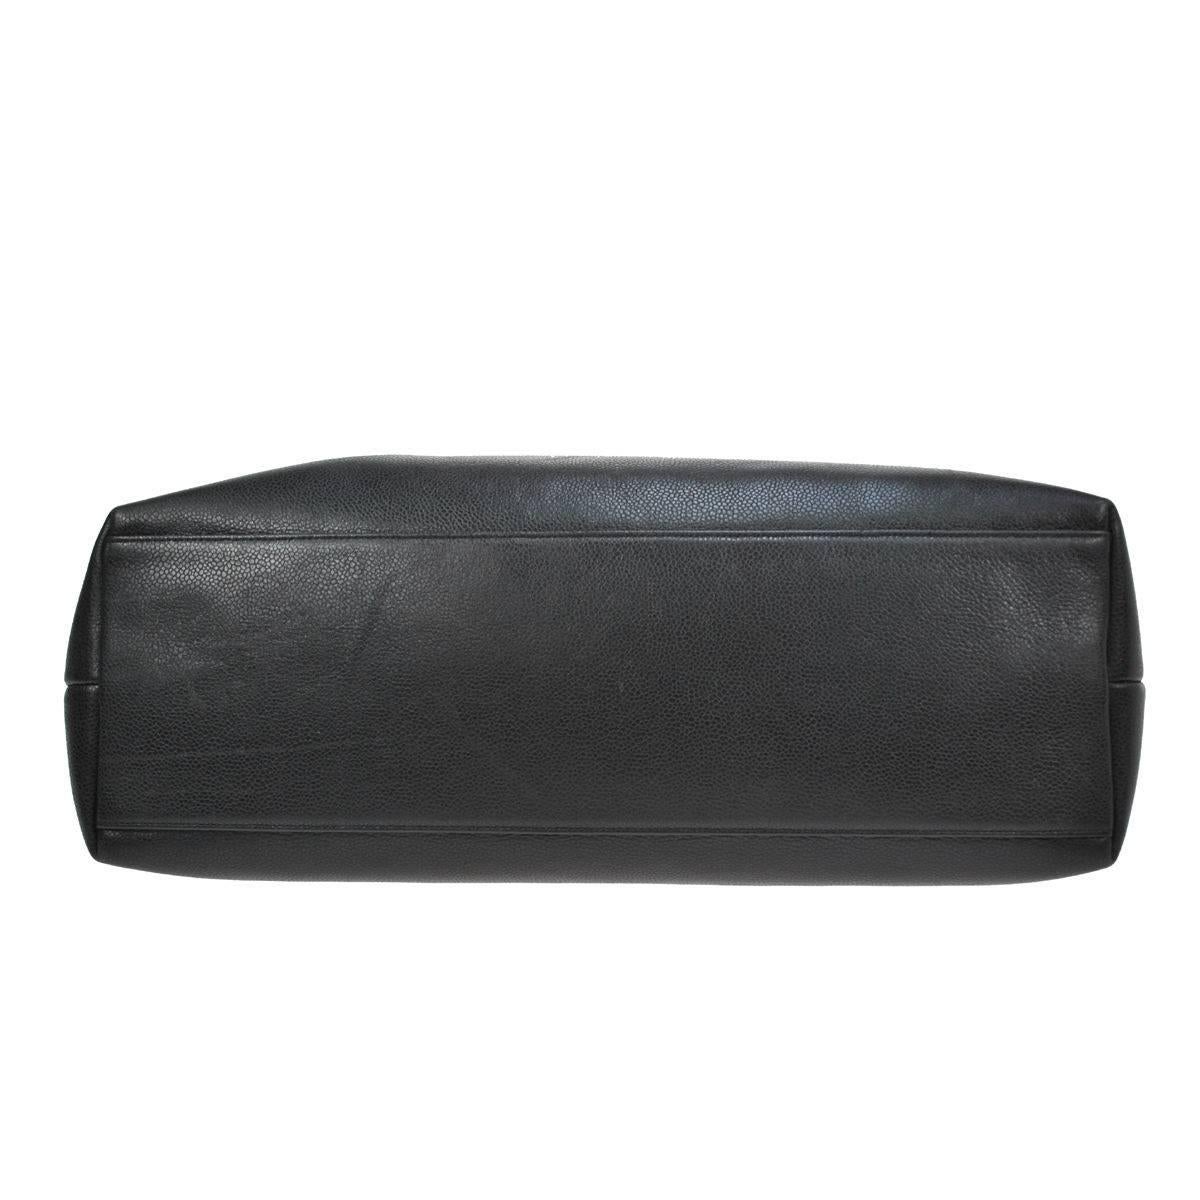 Chanel Black Caviar Leather Carryall Shopper Weekender Travel Shoulder Tote Bag 3